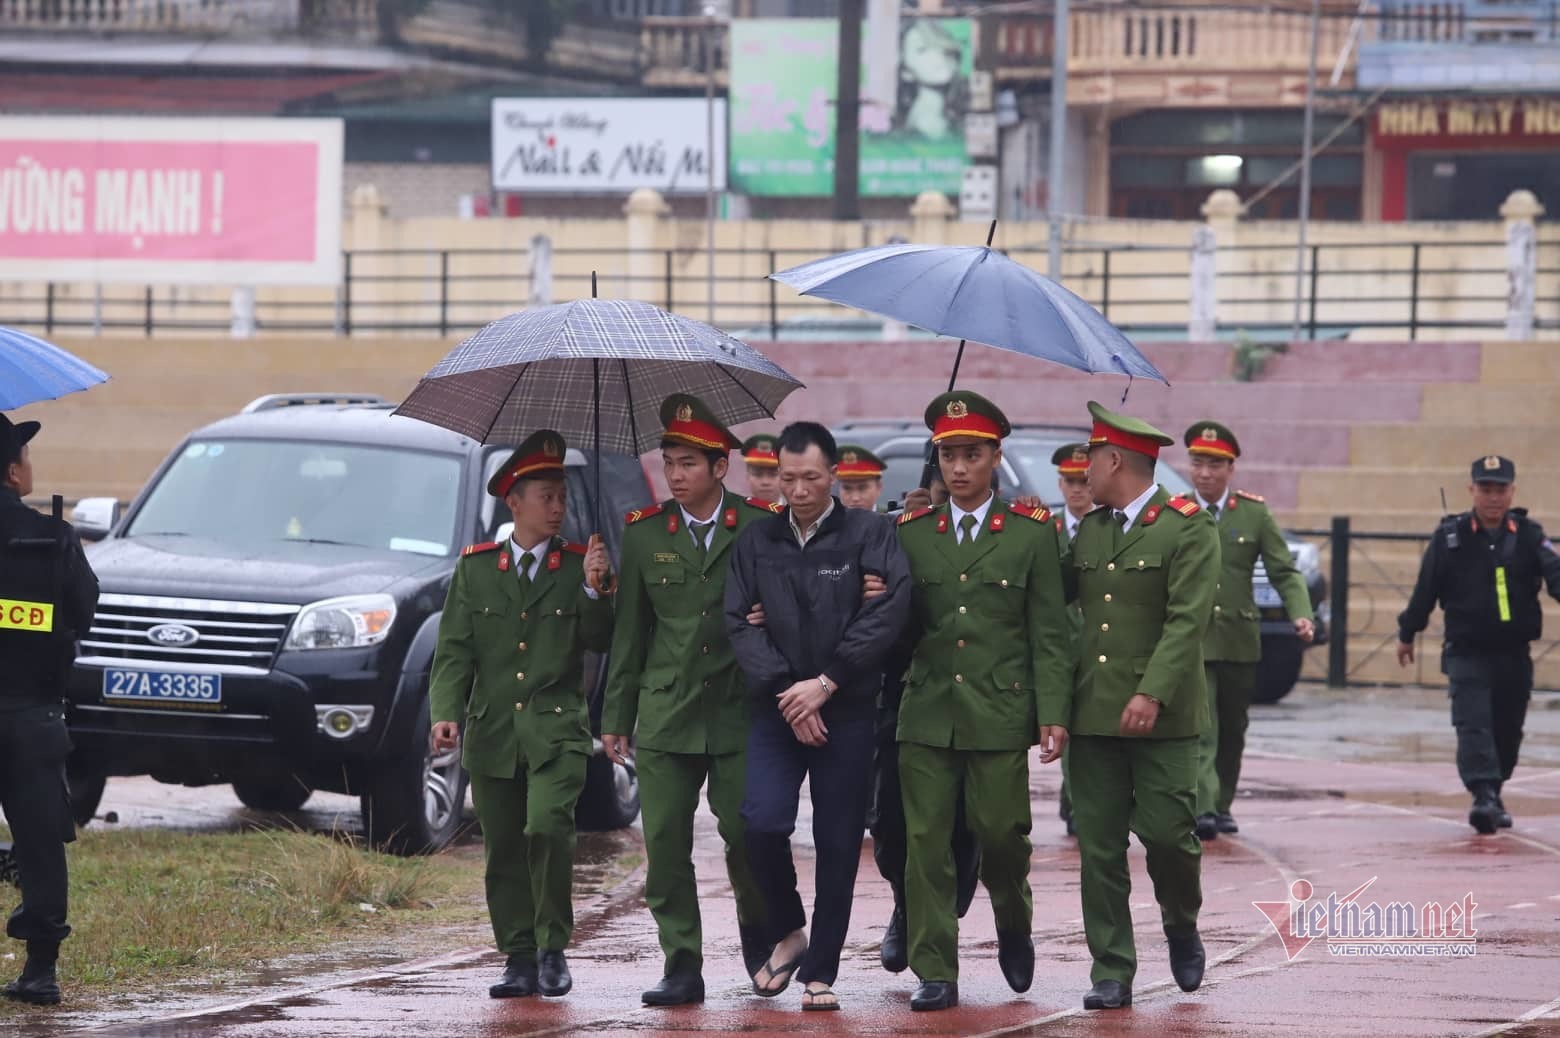 Gia đình đội mưa mang di ảnh nữ sinh Cao Mỹ Duyên đến nghe tuyên án